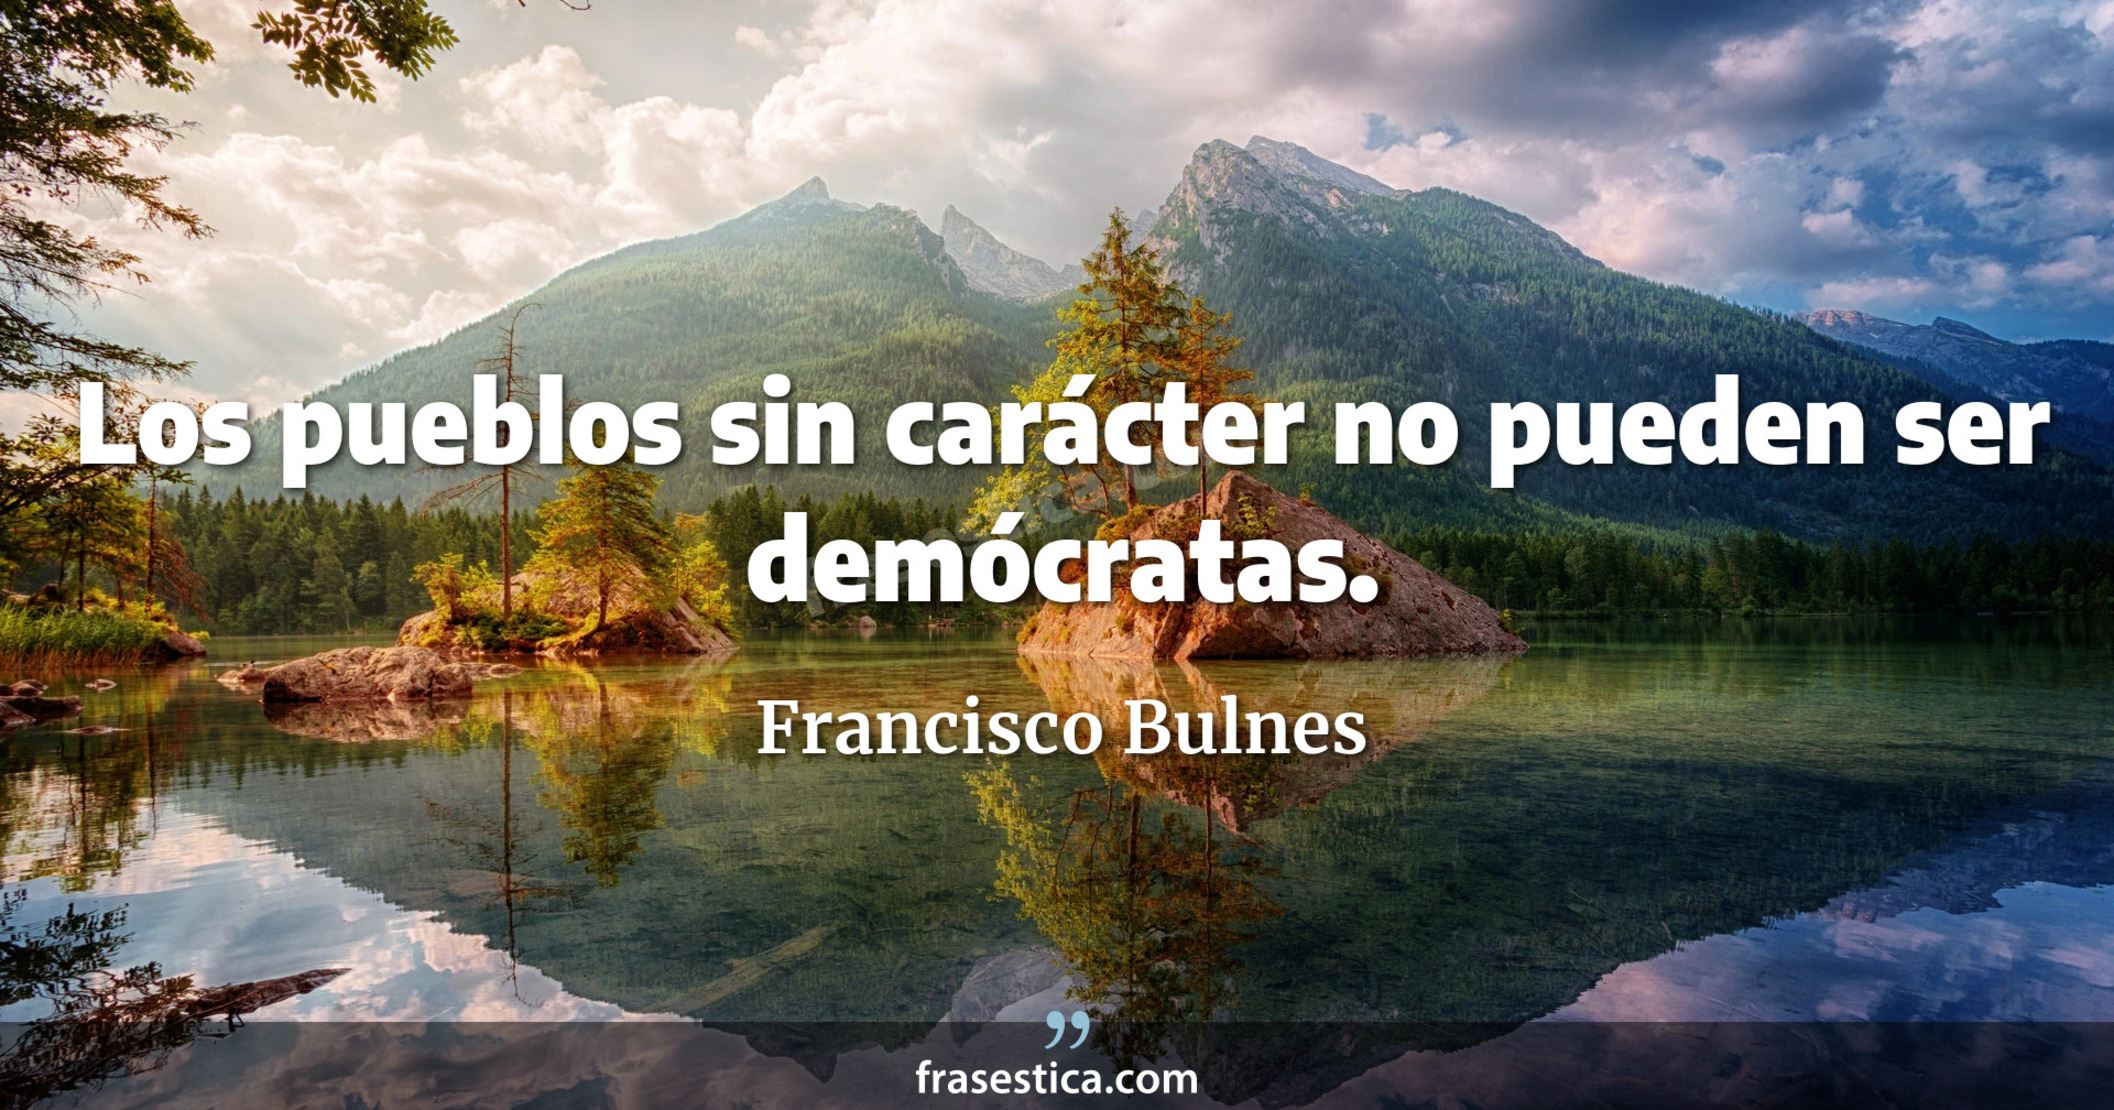 Los pueblos sin carácter no pueden ser demócratas. - Francisco Bulnes